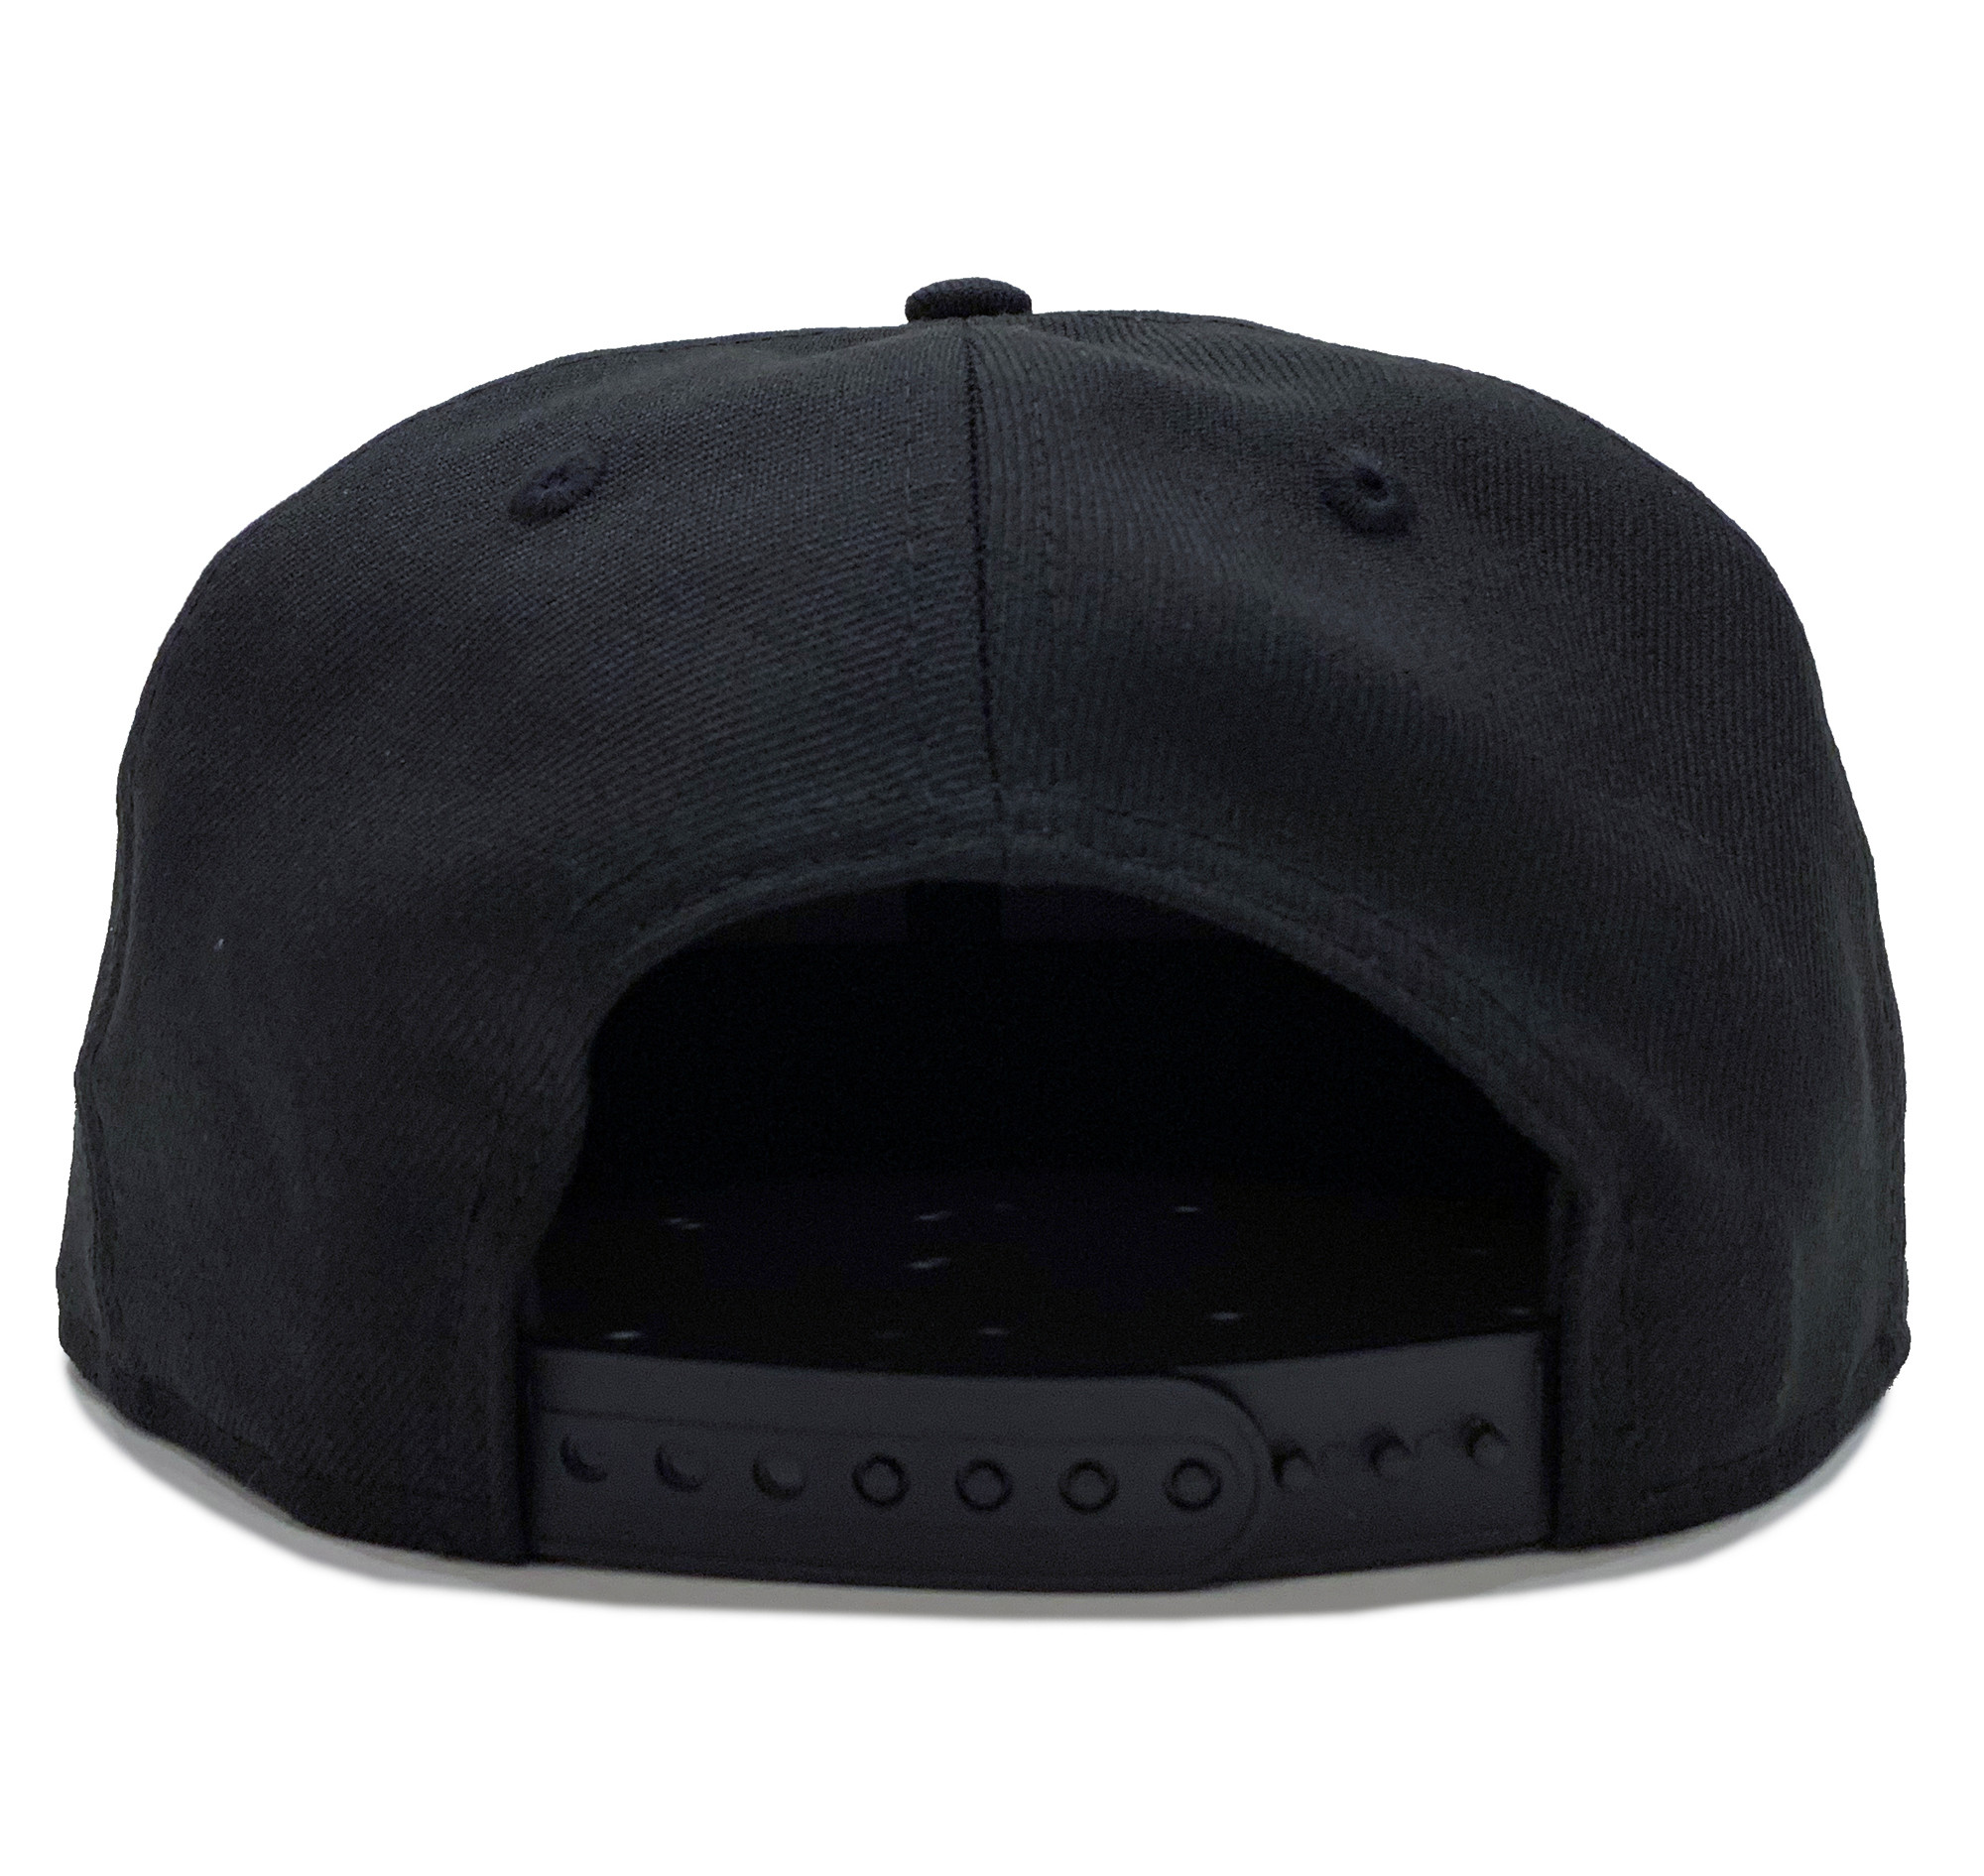 Logo New Era 9FIFTY Snapback Hat | Black/Black - Eat Sleep Race ...